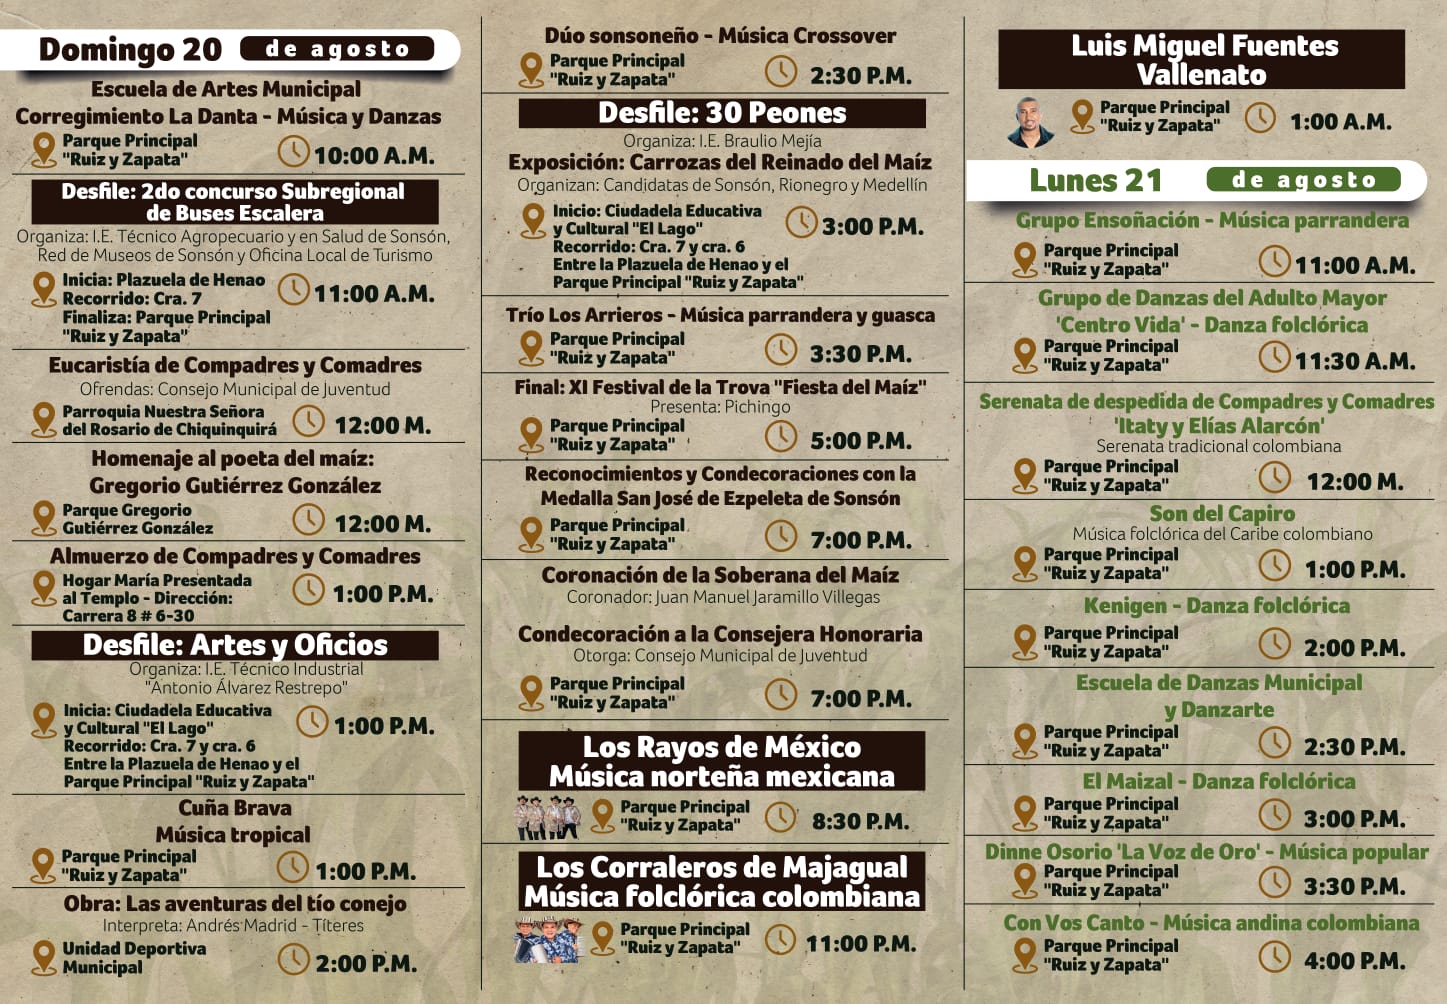 Fiestas del Maíz - 2023 - Programación - Sonsón Antioquia